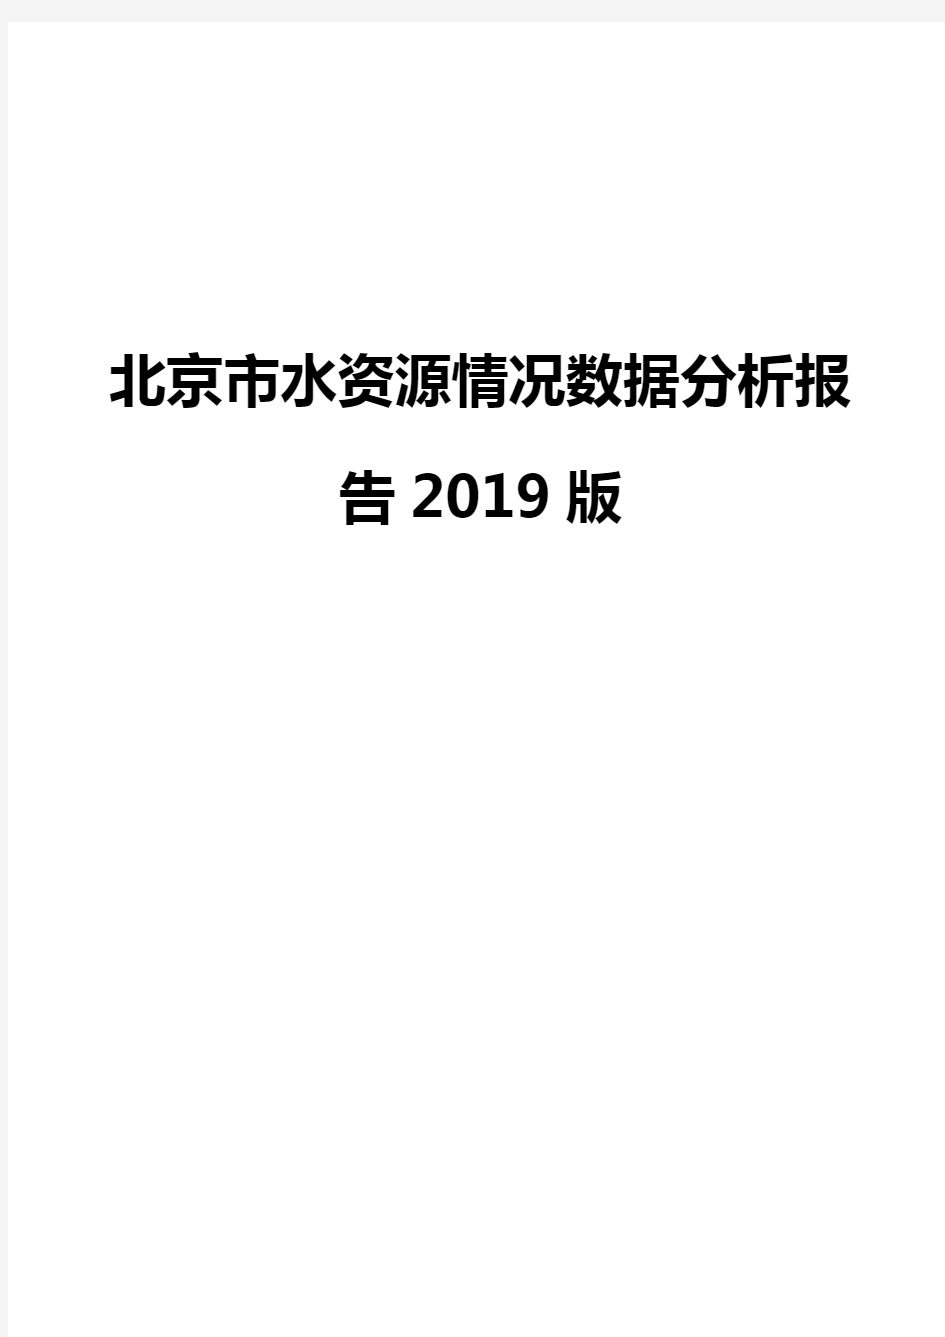 北京市水资源情况数据分析报告2019版